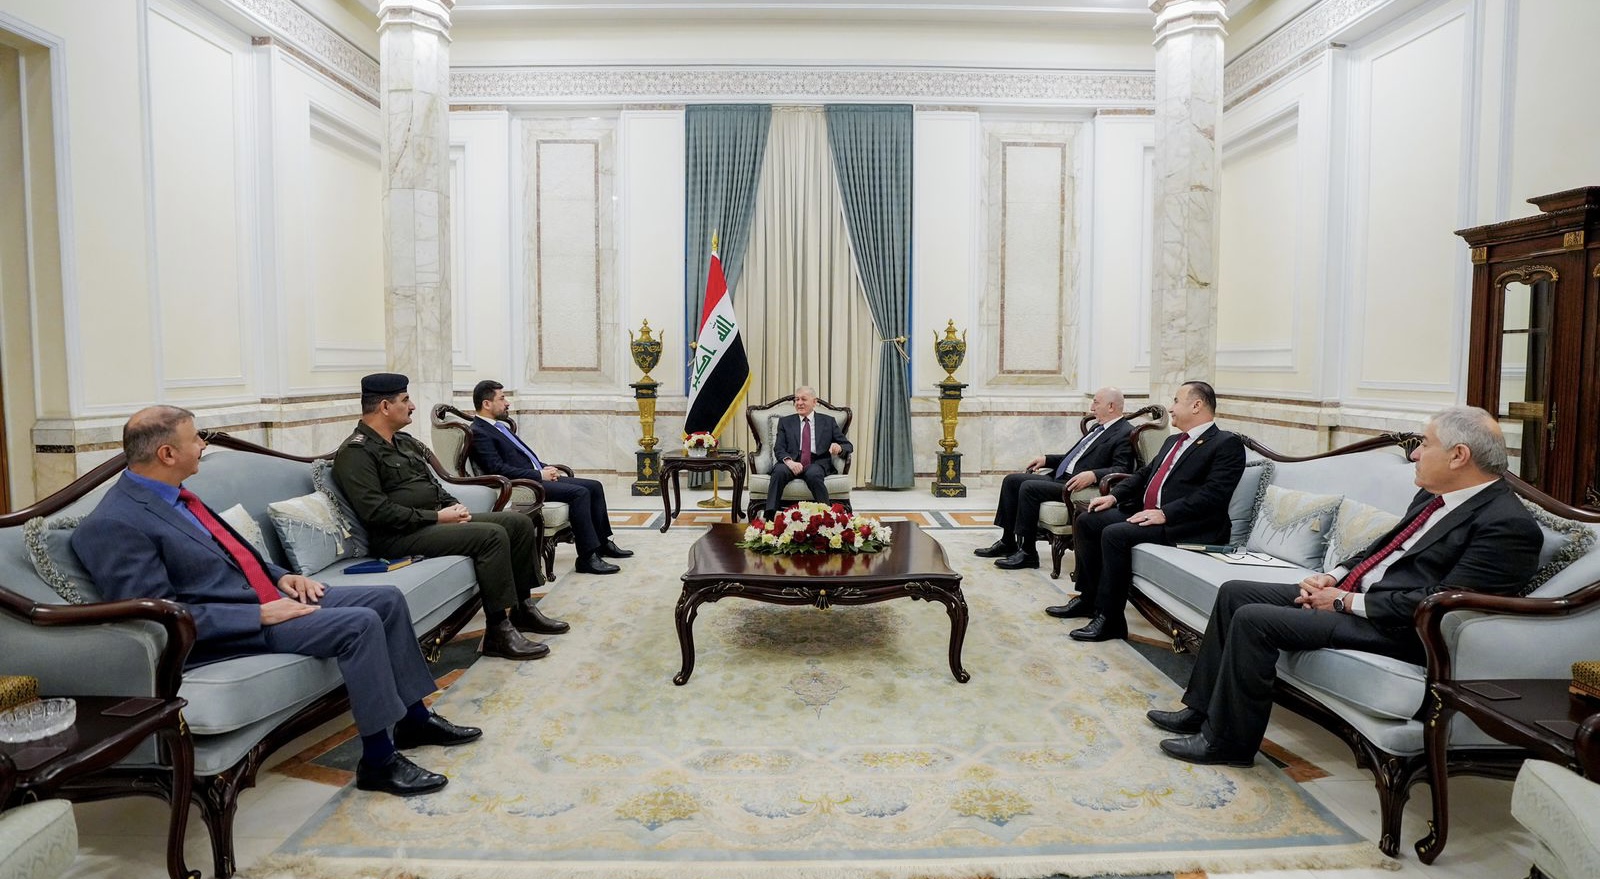 الرئيس العراقي يدعو لمتابعة مقررات لجنة المادة 140 وإعادة الحقوق لأصحابها